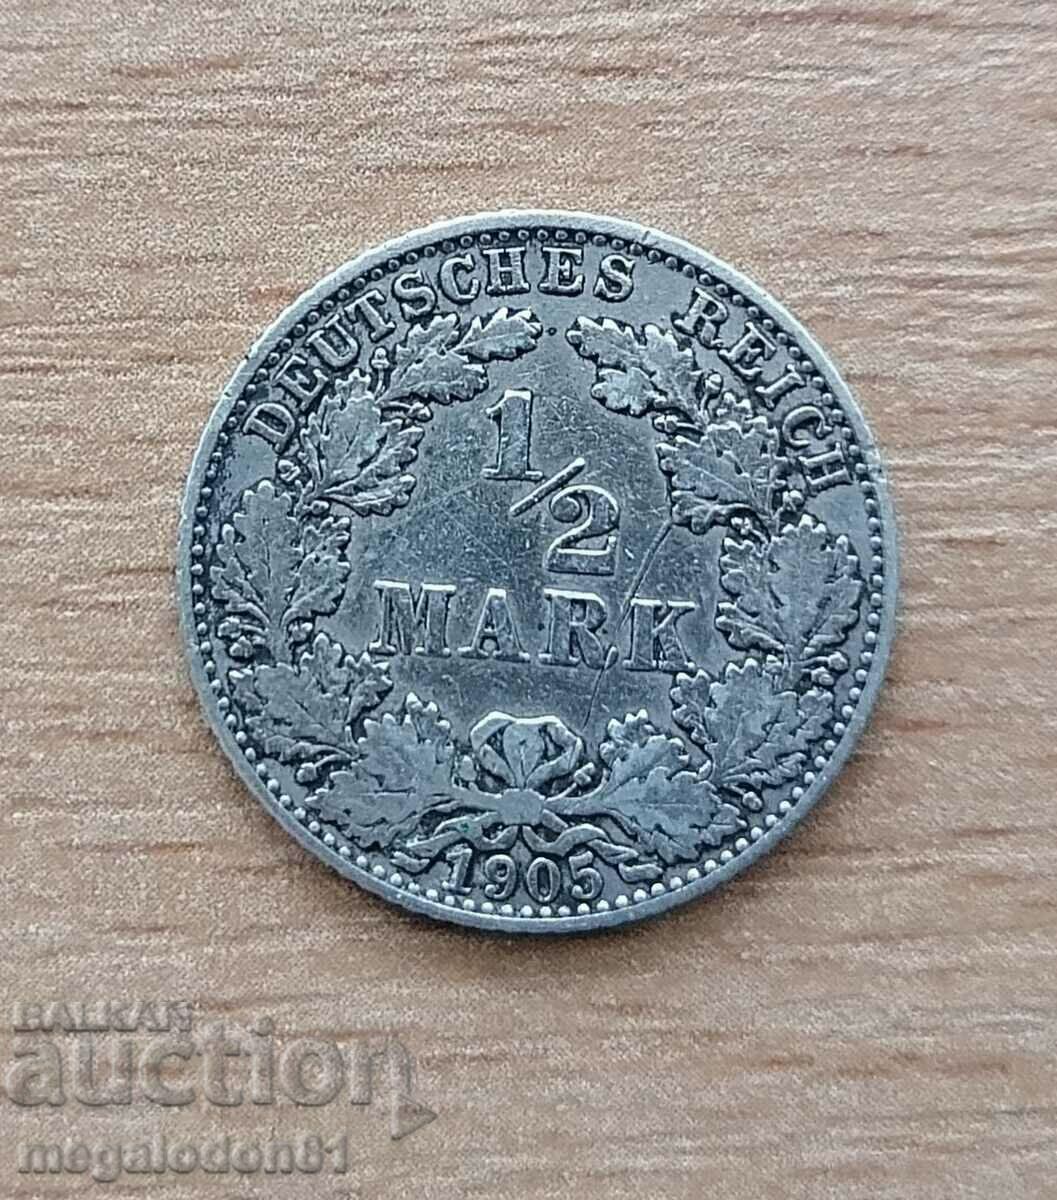 Germany - 1/2 mark 1905